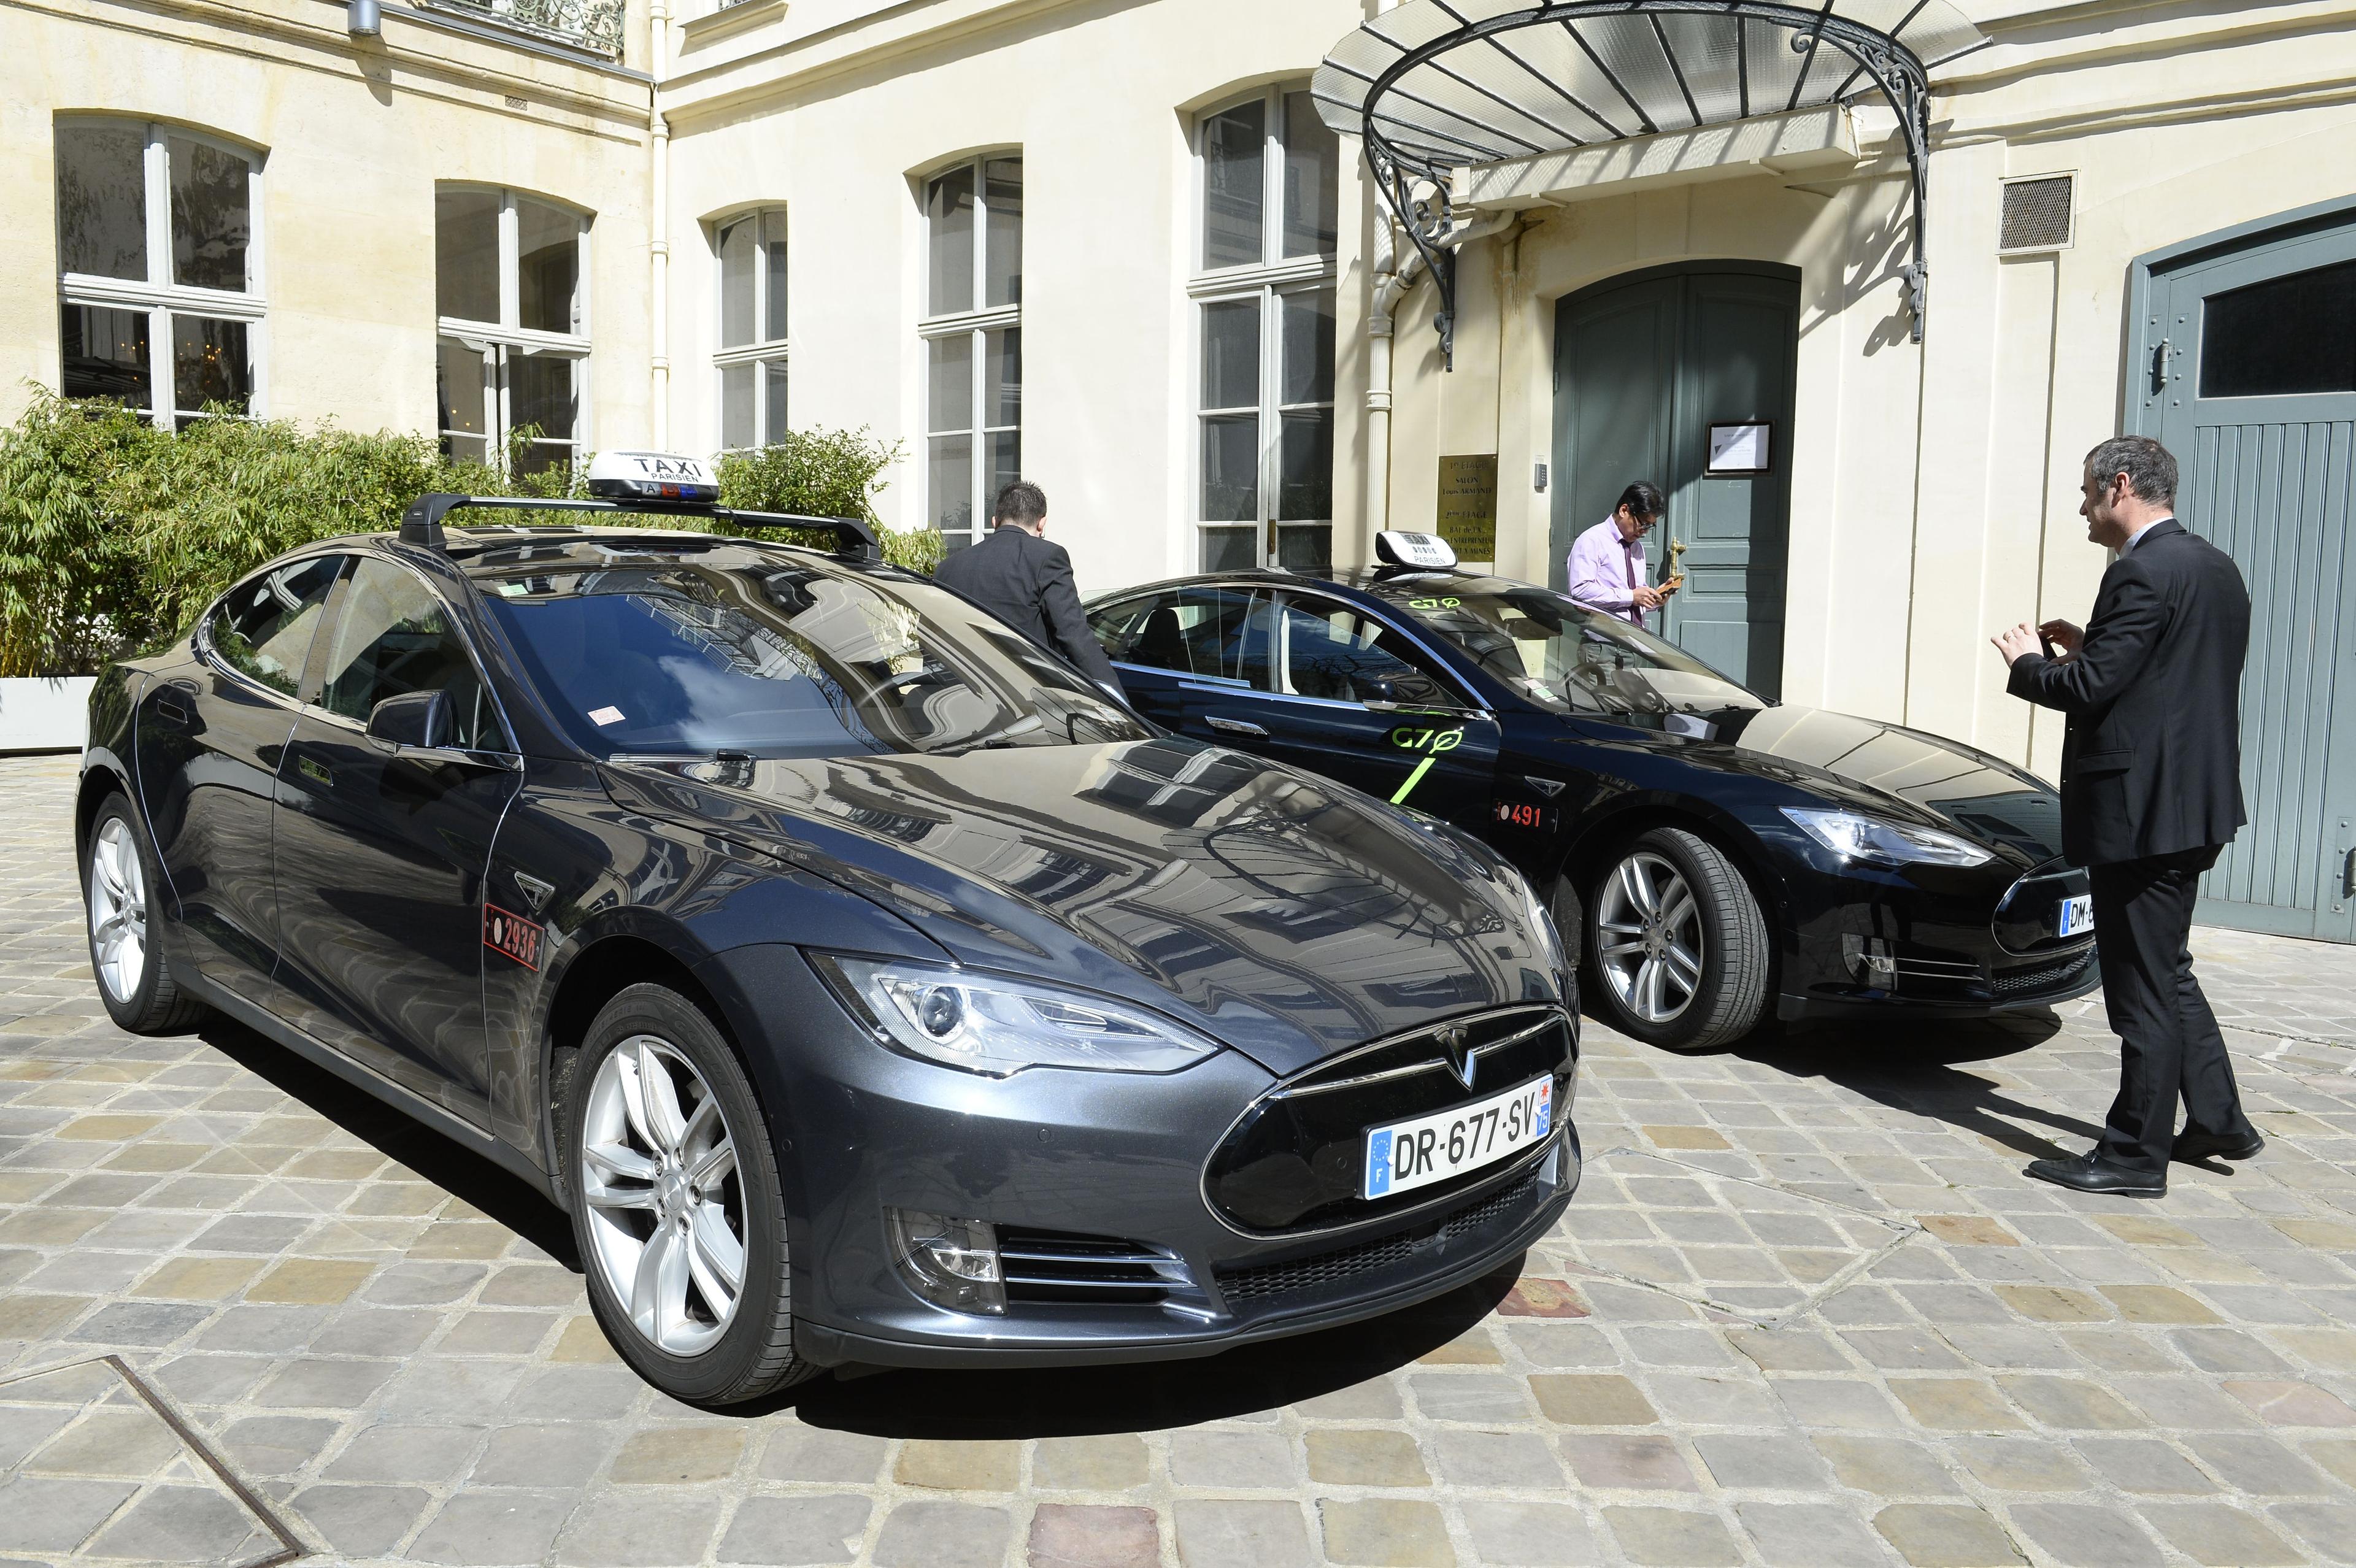 Elektriska Tesla-bilar om ska användas som taxibilar presenteras i Paris. Det litium som finns i bland annat elbilars batterier blir nu allt mer eftersökt internationellt. (Foto: Bertrand Guay/AFP/Getty Images)